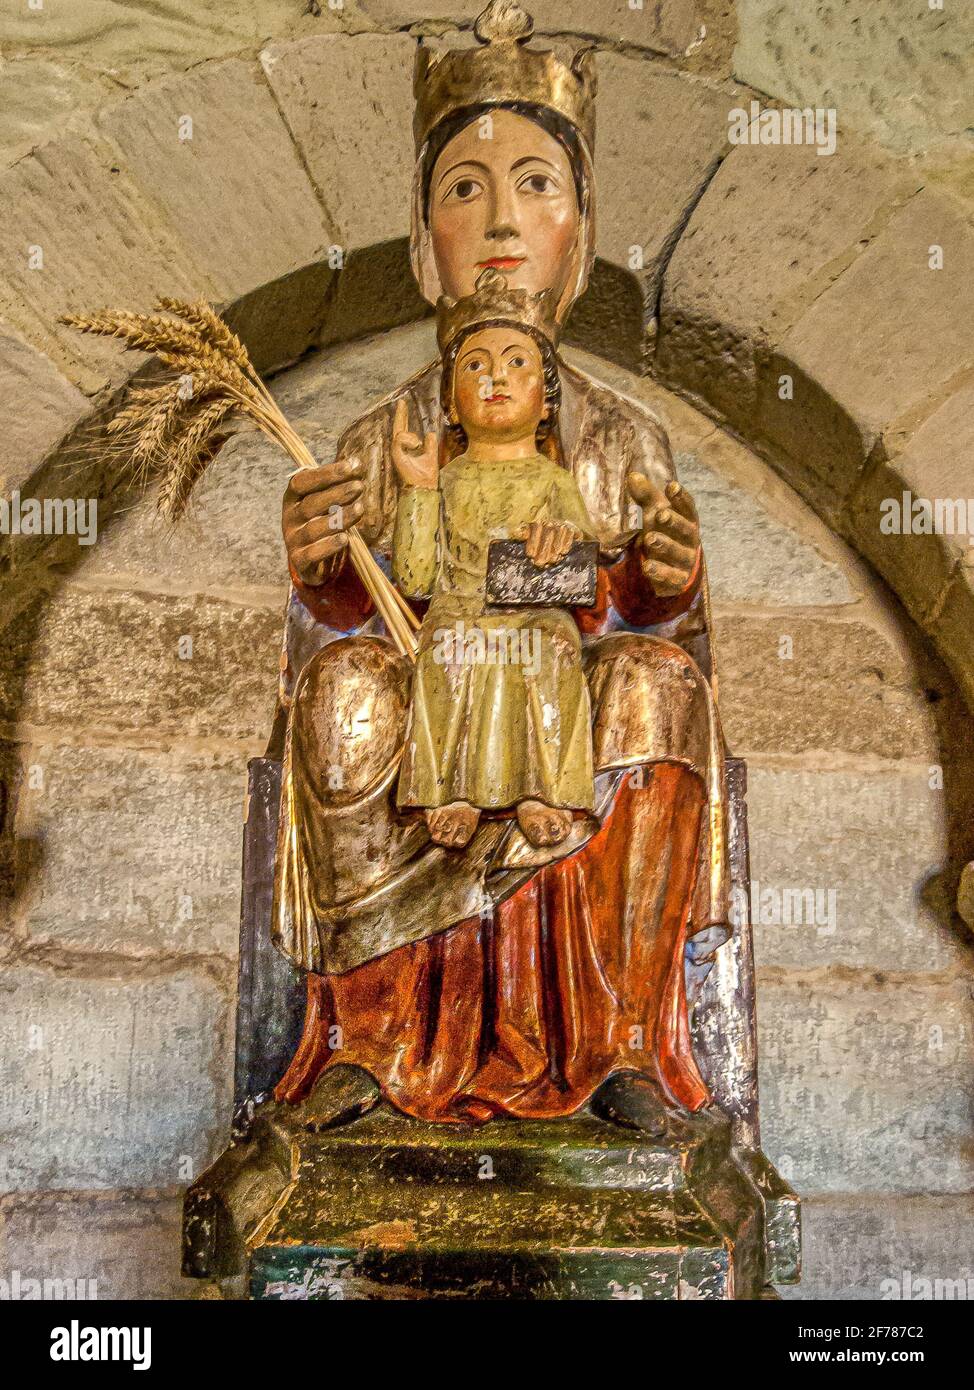 Estatua de la Virgen María en la iglesia románica del siglo 12th de Santa María de Eunate, España, 16 de octubre de 2009 Foto de stock